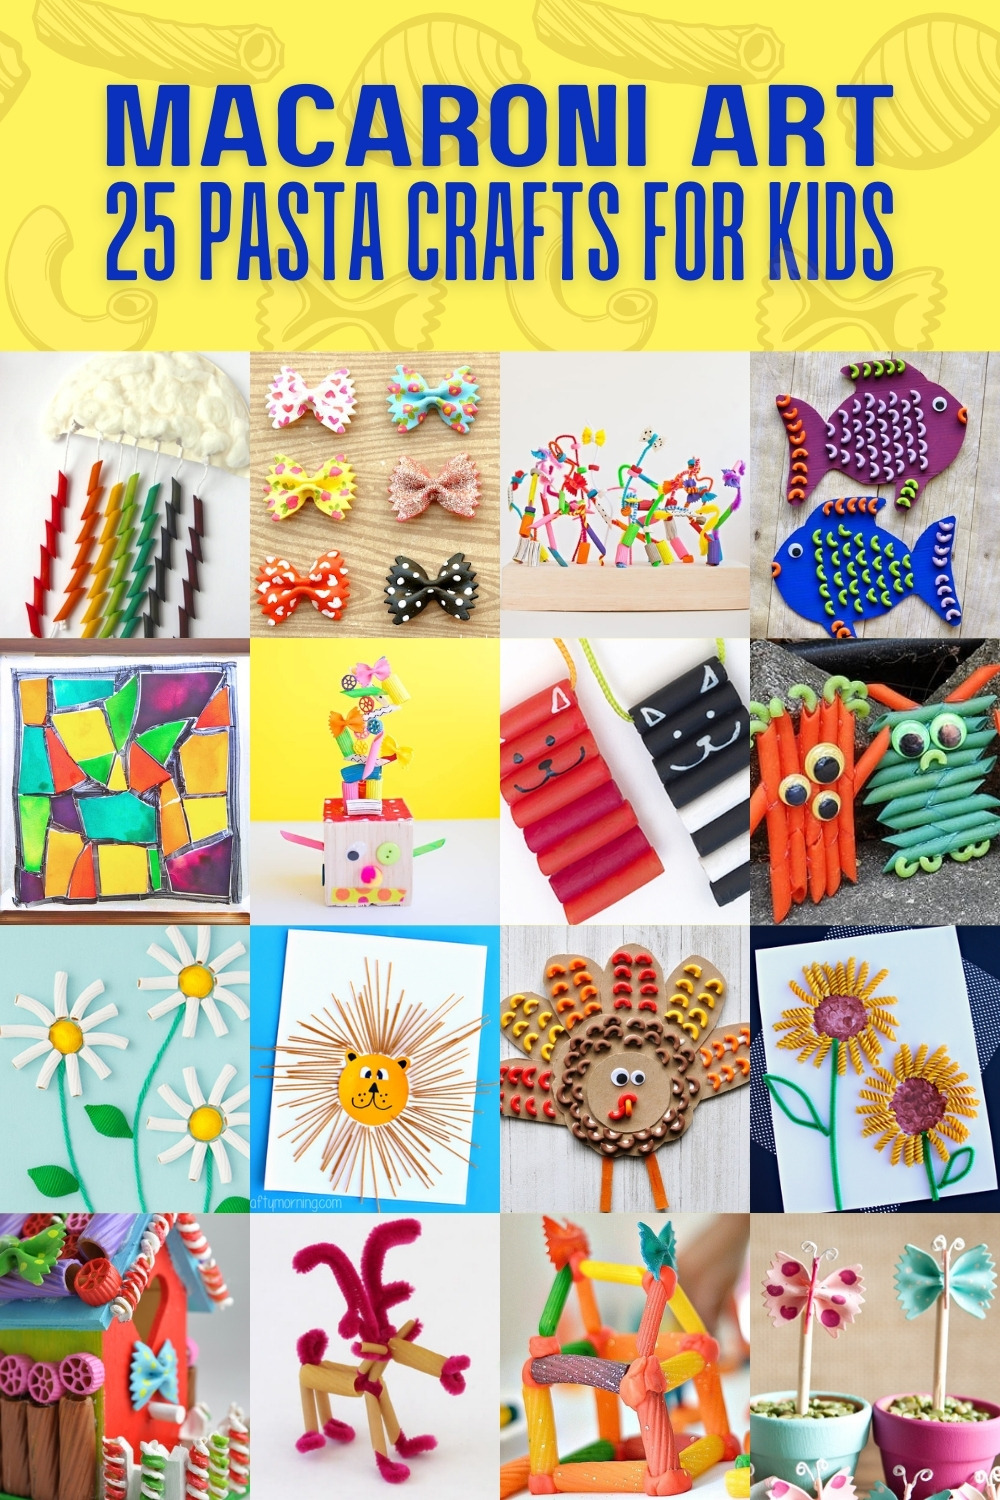 Macaroni Art - 25 pasta crafts for kids